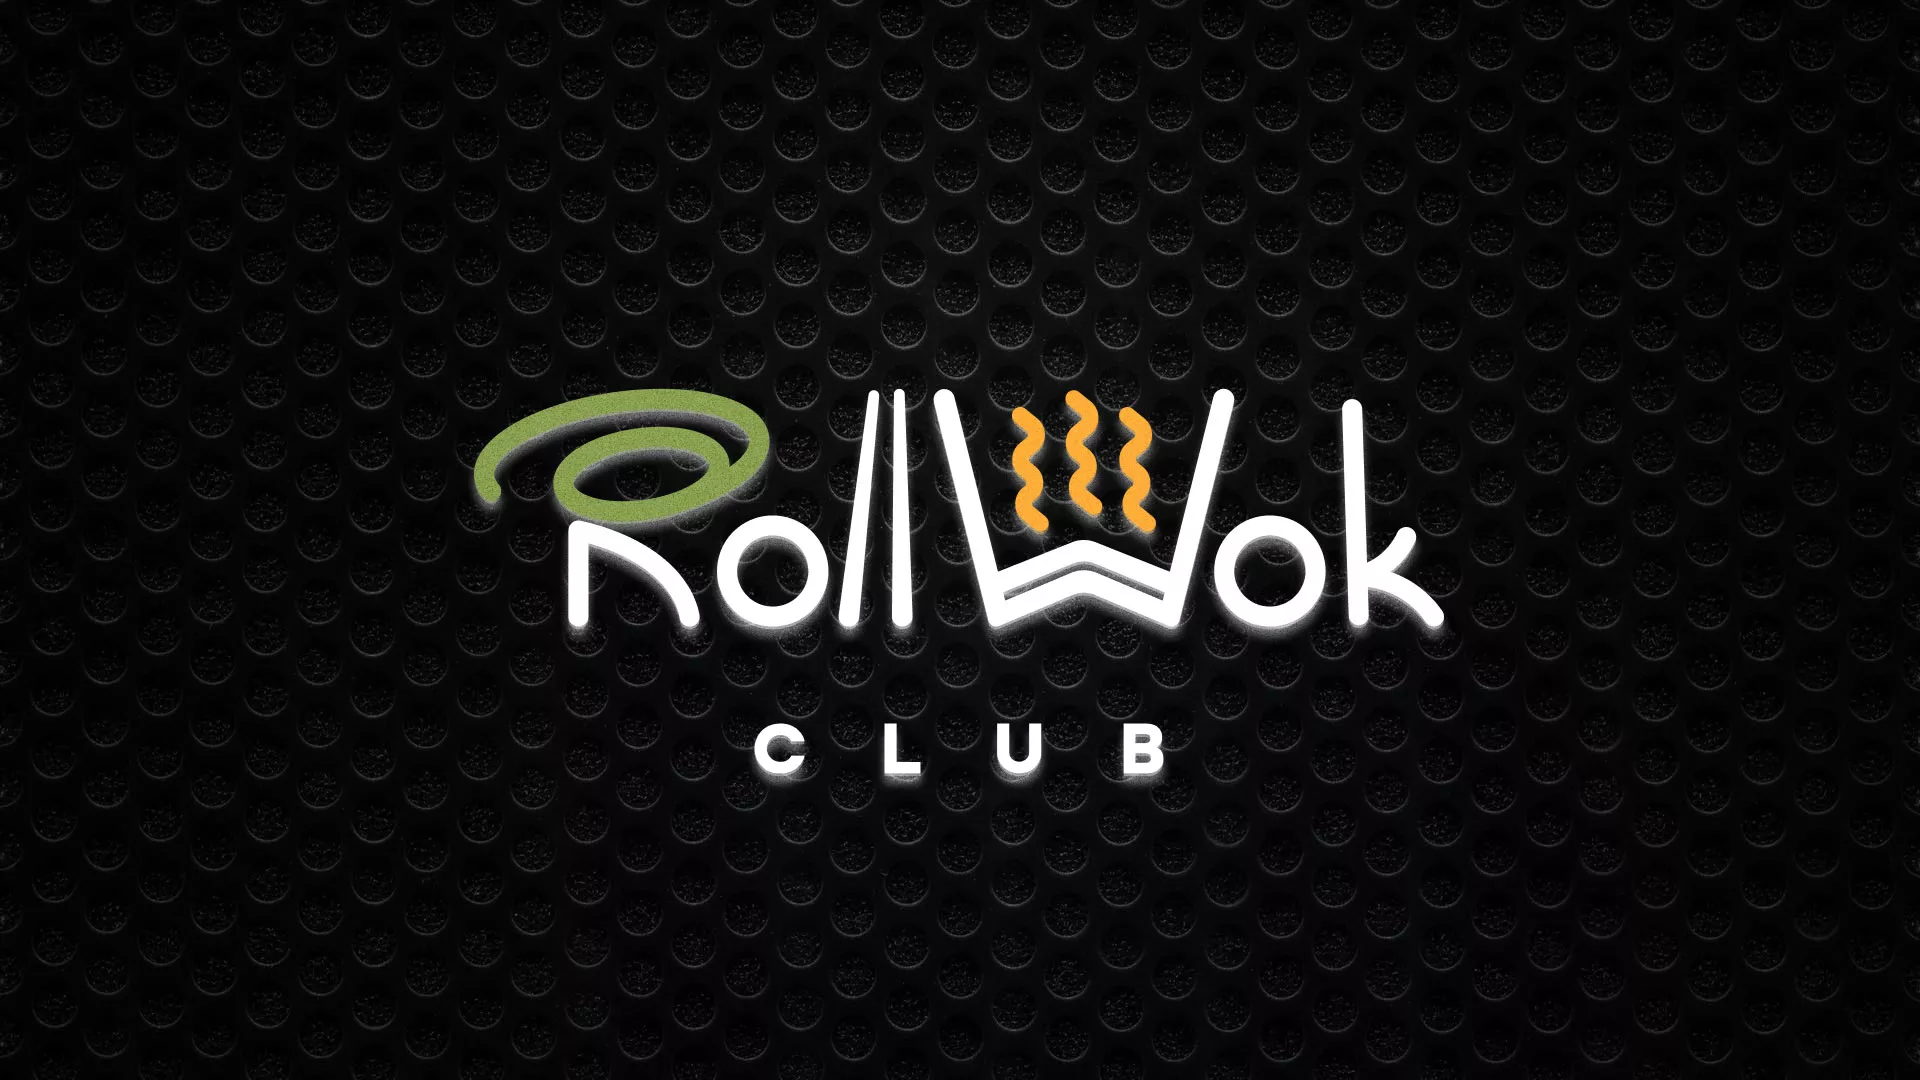 Брендирование торговых точек суши-бара «Roll Wok Club» в Костомукше